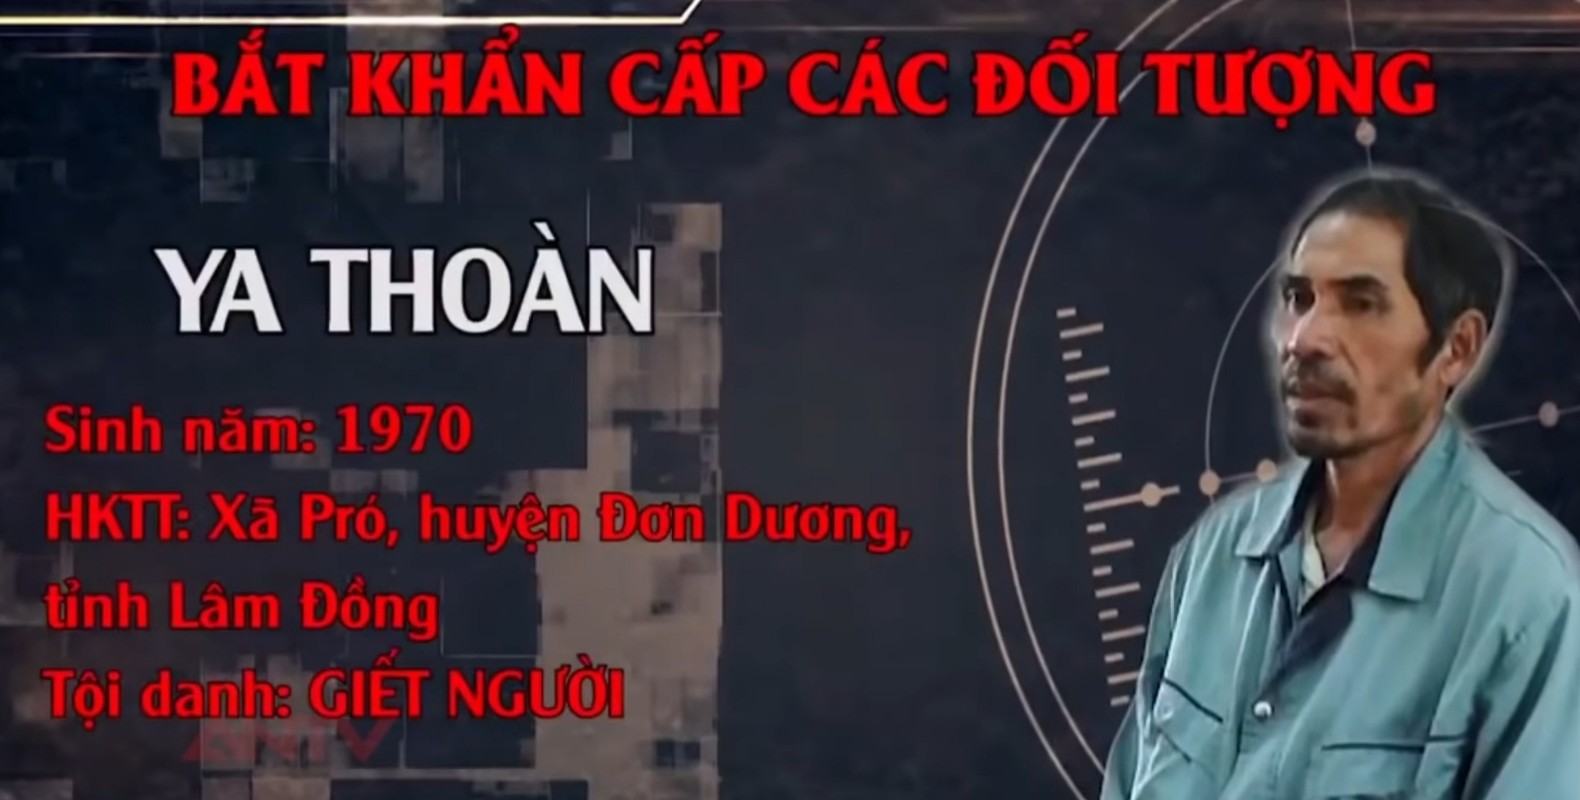 Hanh trinh pha an: Tu thi ben dong suoi to cao ke sat nhan mau lanh-Hinh-21